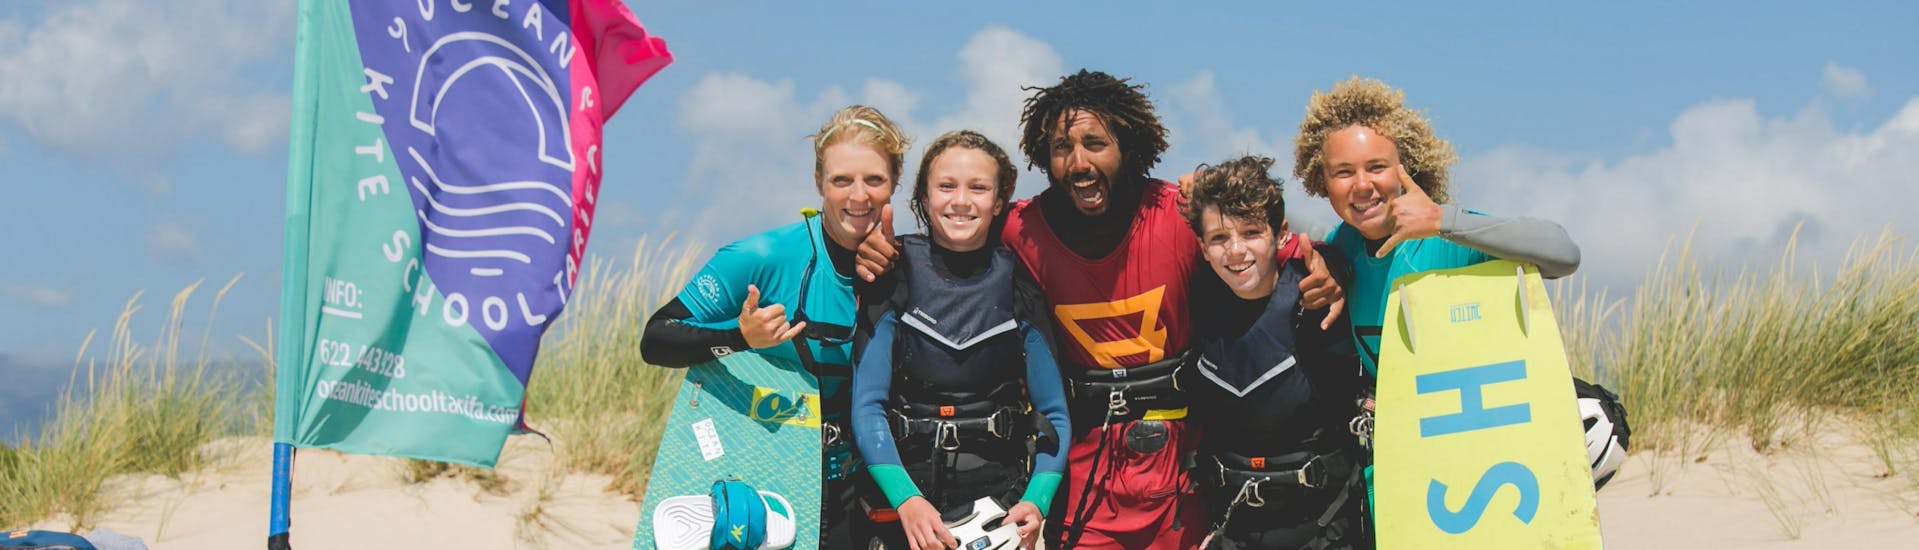 kitesurfing-lessons-for-kids-beginners-ocean-kite-school-tarifa-hero